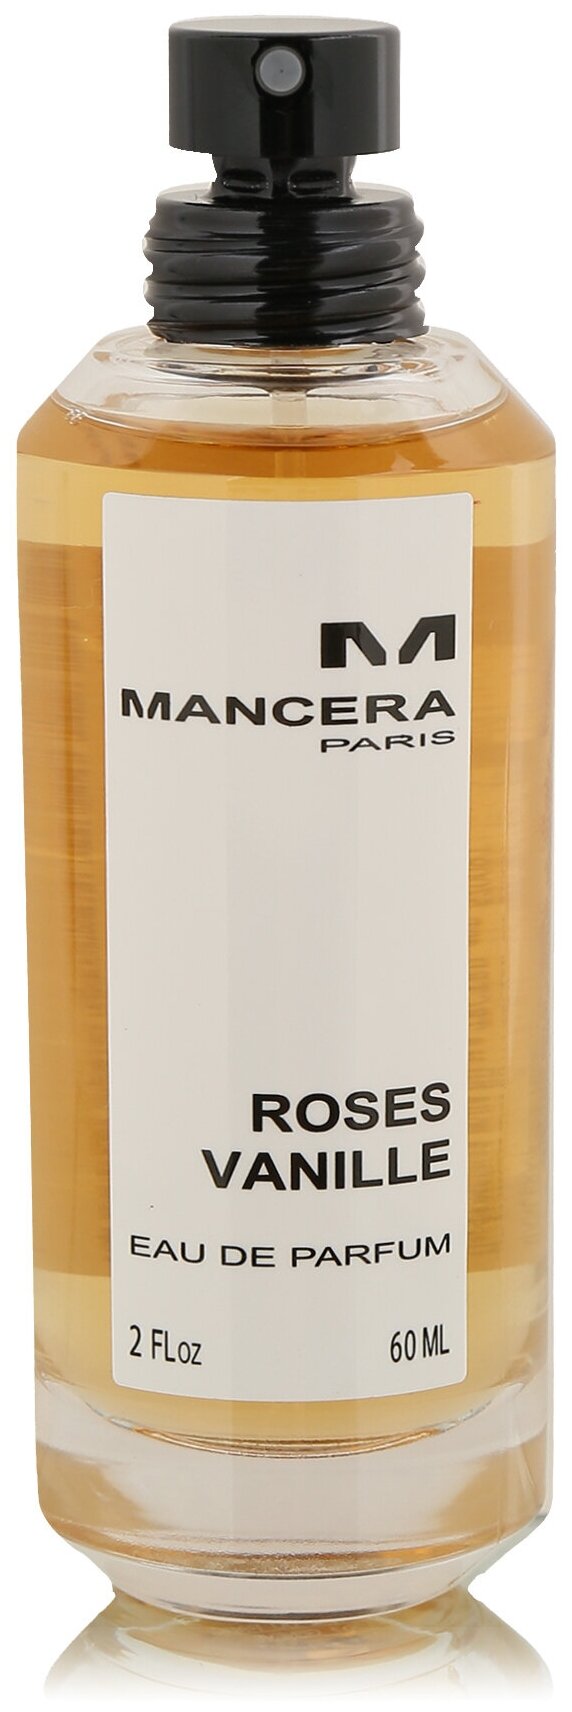 Парфюмерная вода Mancera Roses Vanille 60 мл.